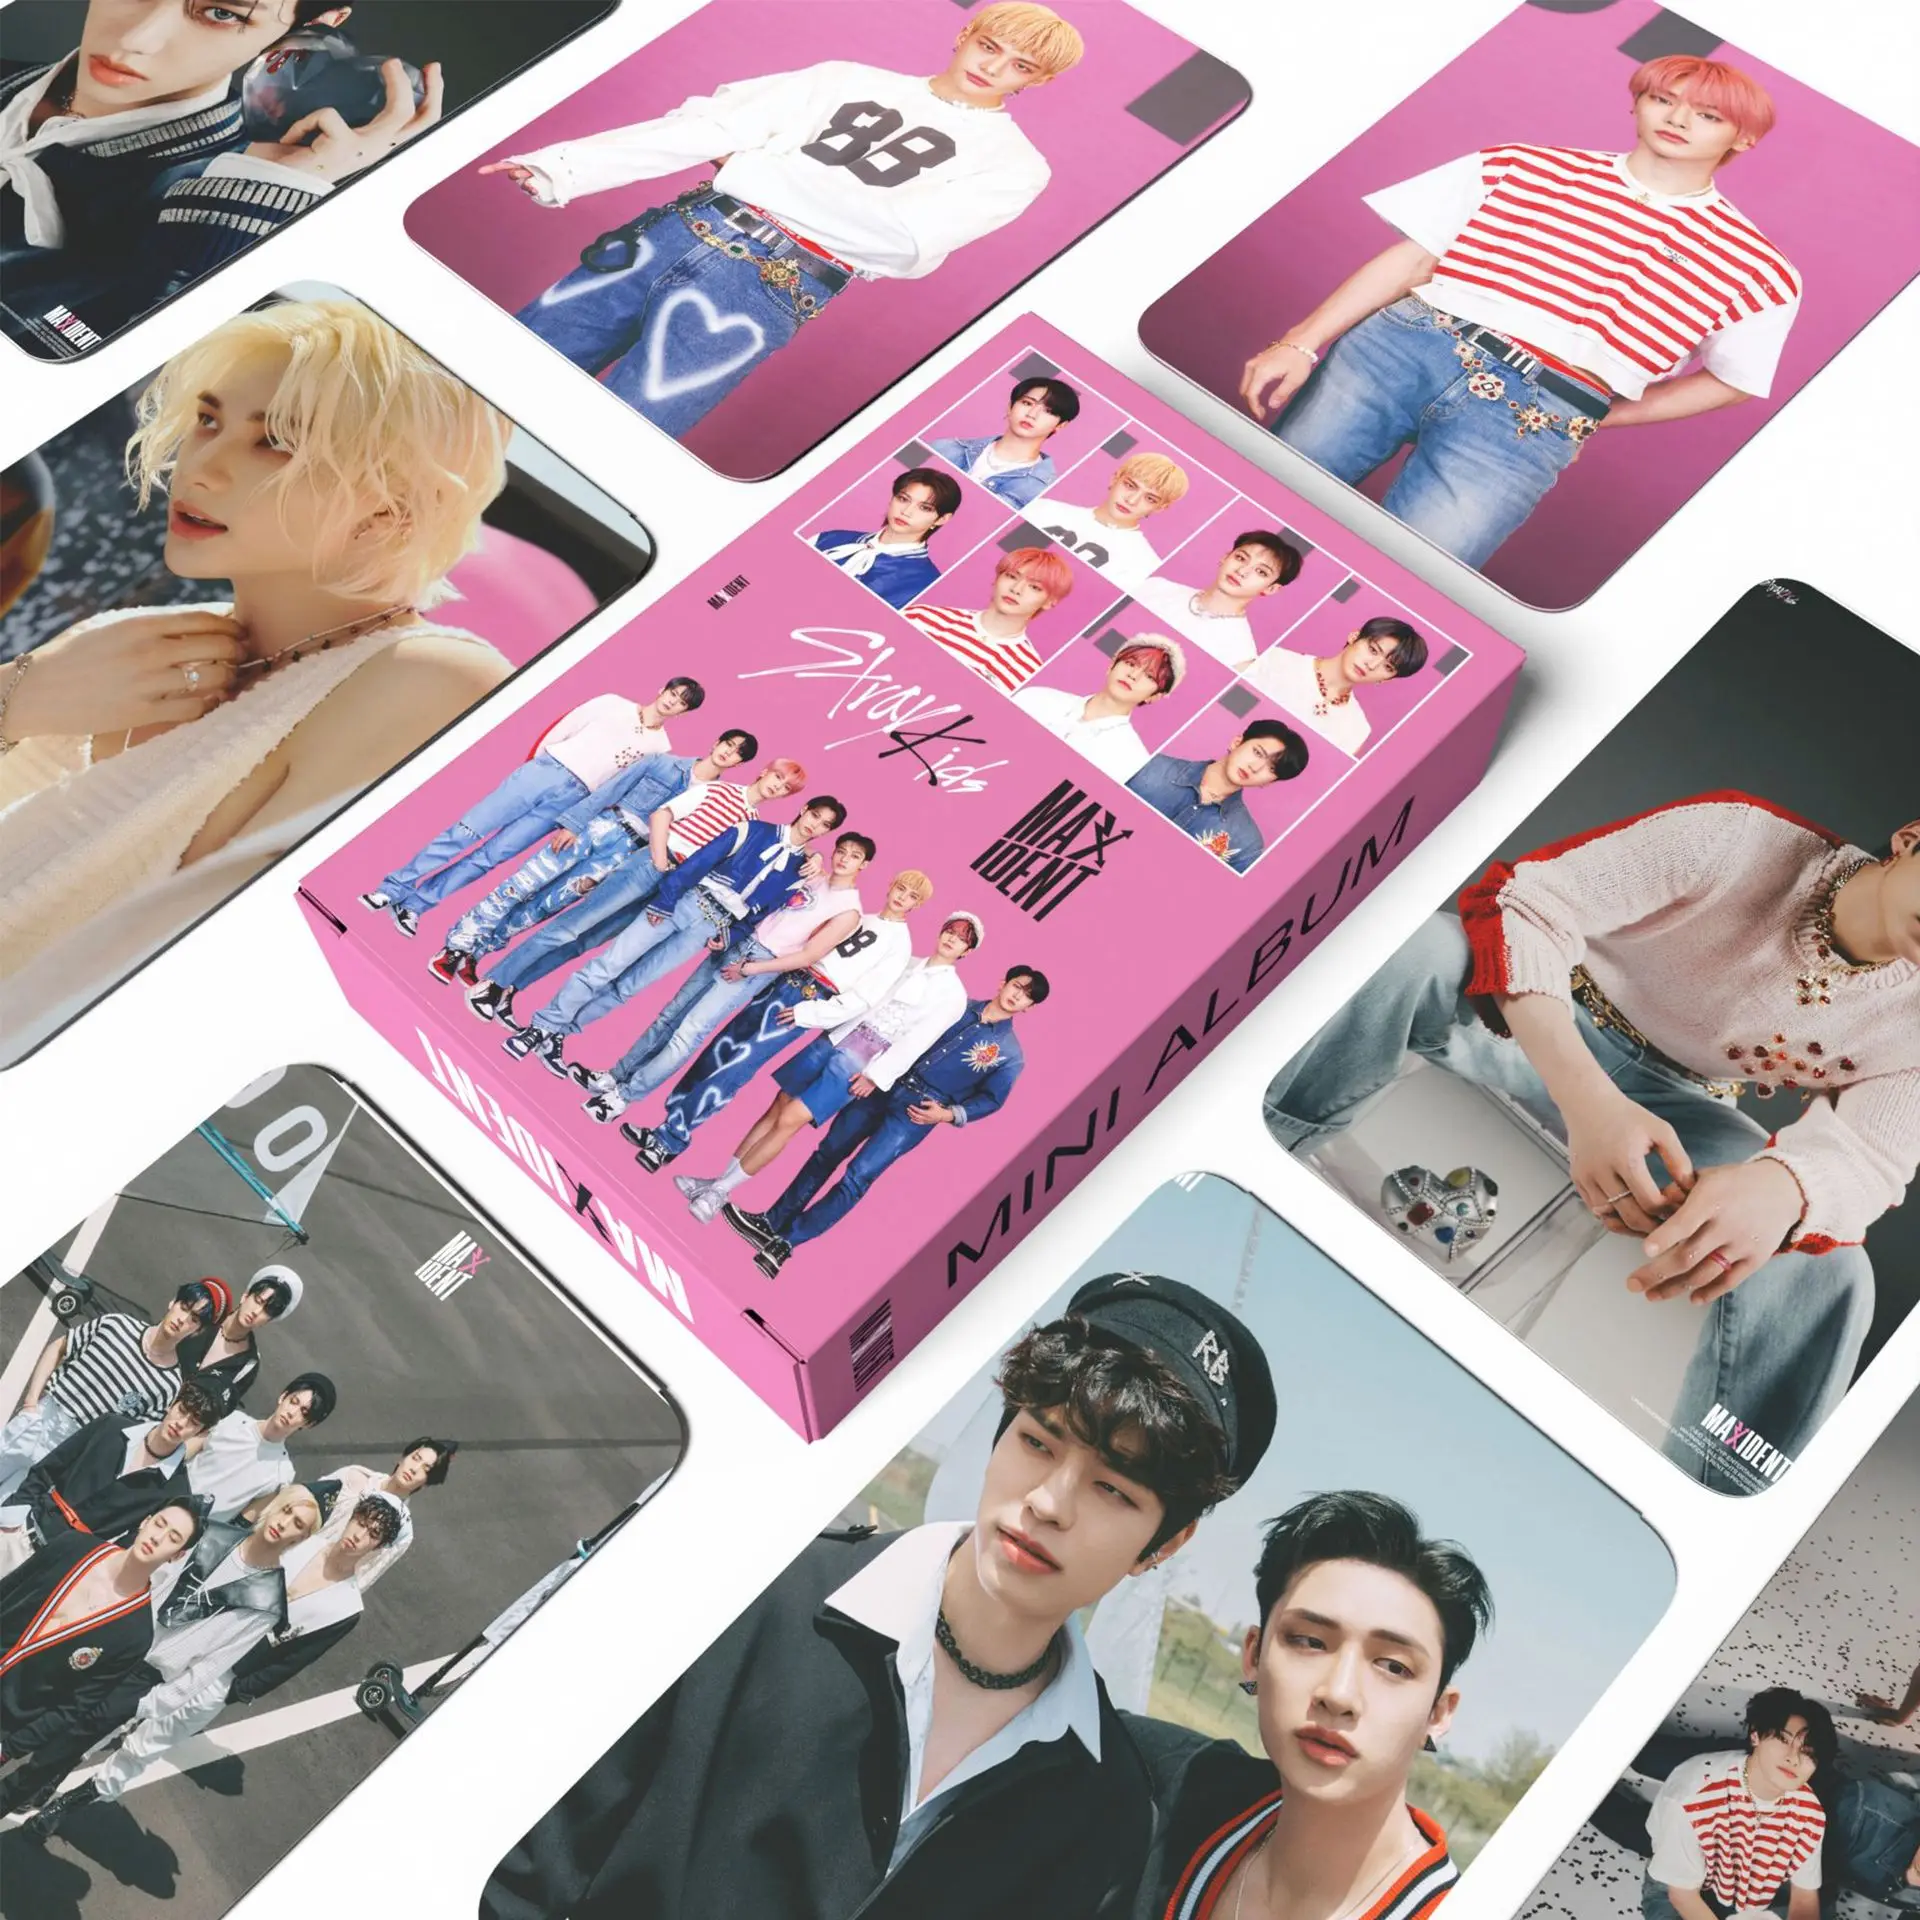 

55 шт./набор Kpop Stray Kids Idol HyunJin высококачественные ломо-карты Felix новый альбом MAXIDENT HD Фото Коллекция фото открытка подарок